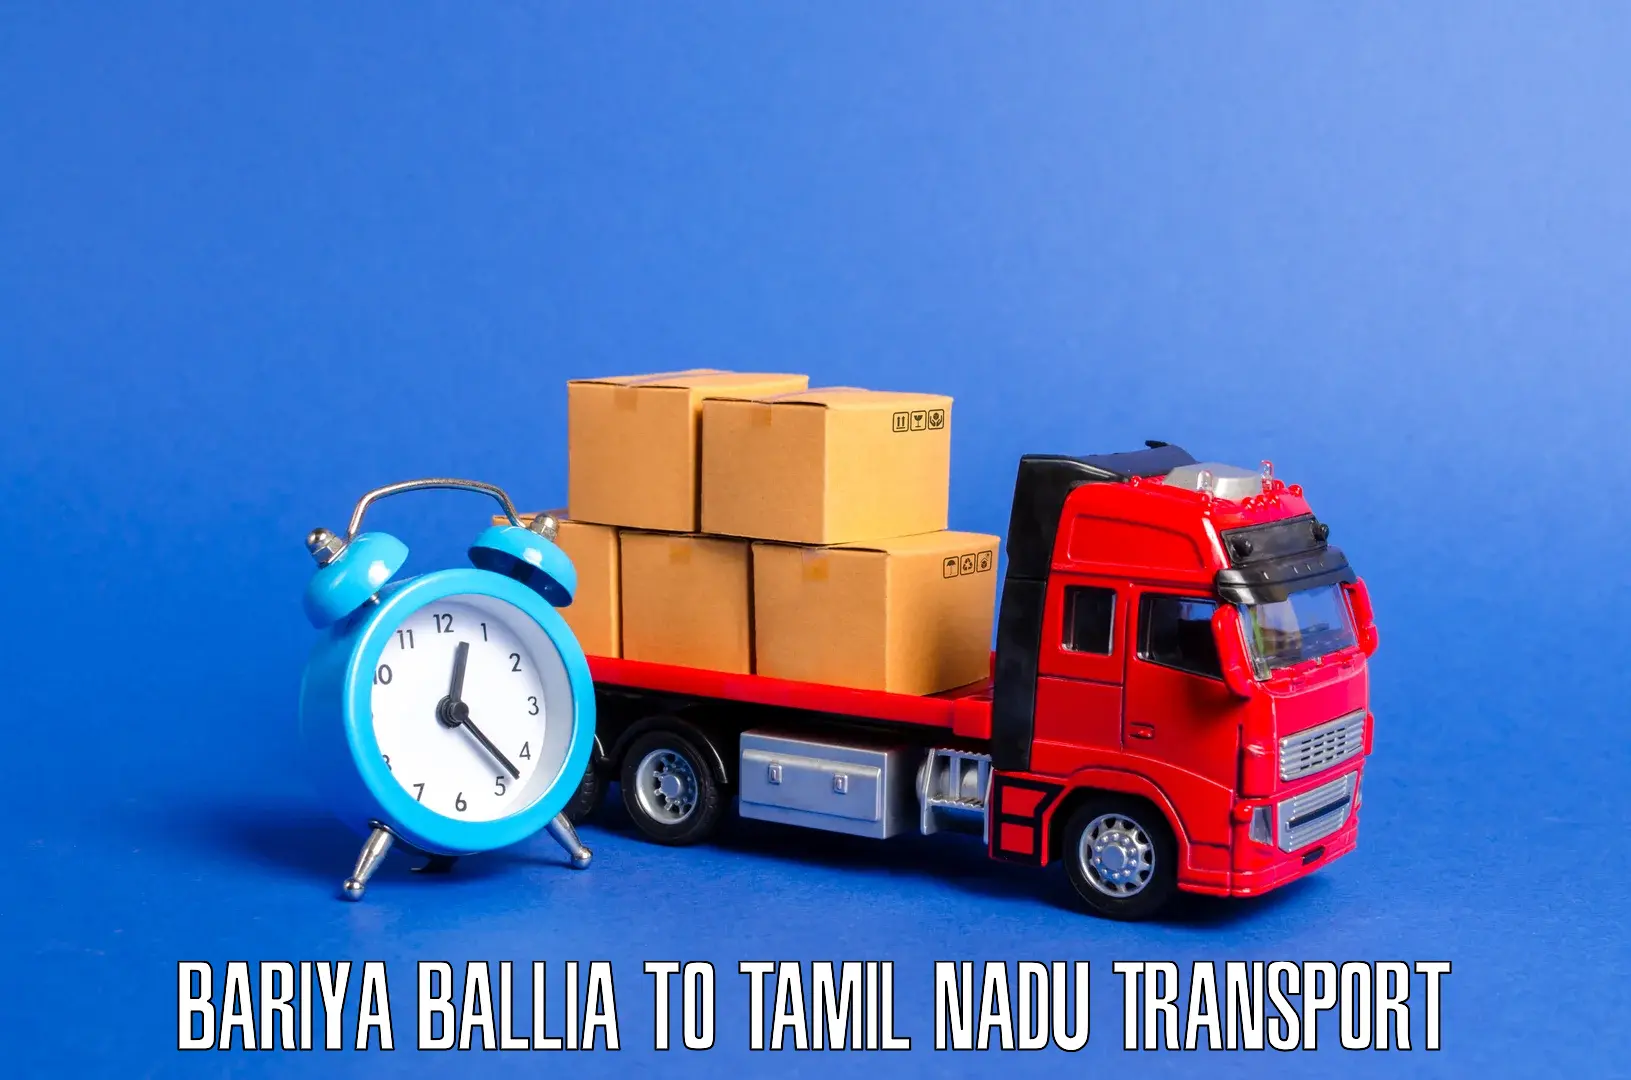 Furniture transport service Bariya Ballia to Ambur